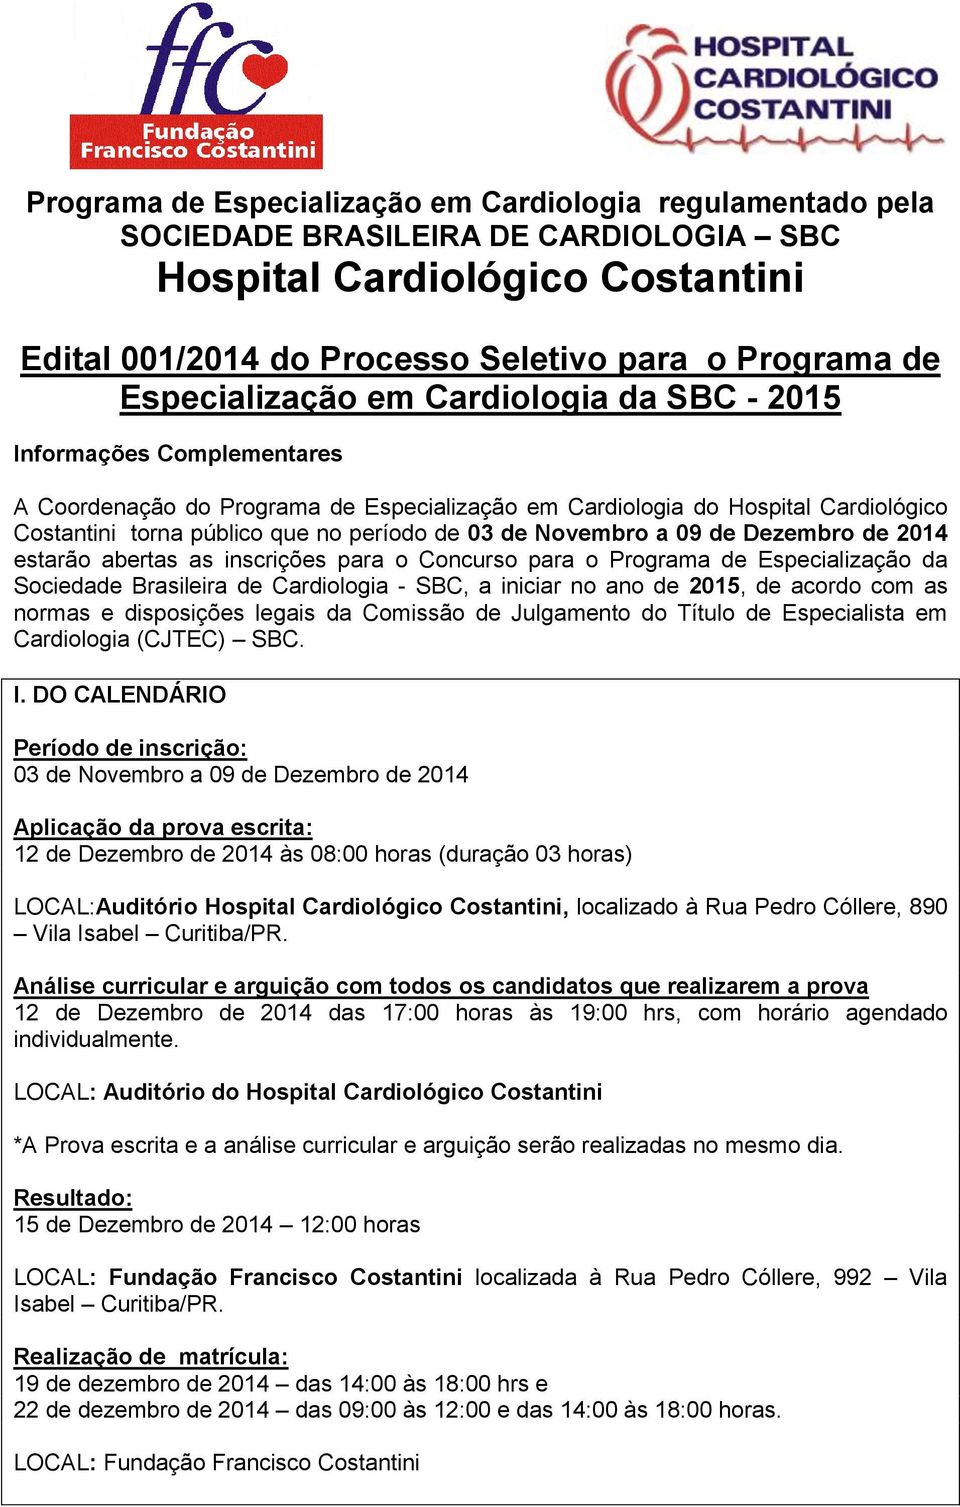 estarão abertas as inscrições para o Concurso para o Programa de Especialização da Sociedade Brasileira de Cardiologia - SBC, a iniciar no ano de 2015, de acordo com as normas e disposições legais da